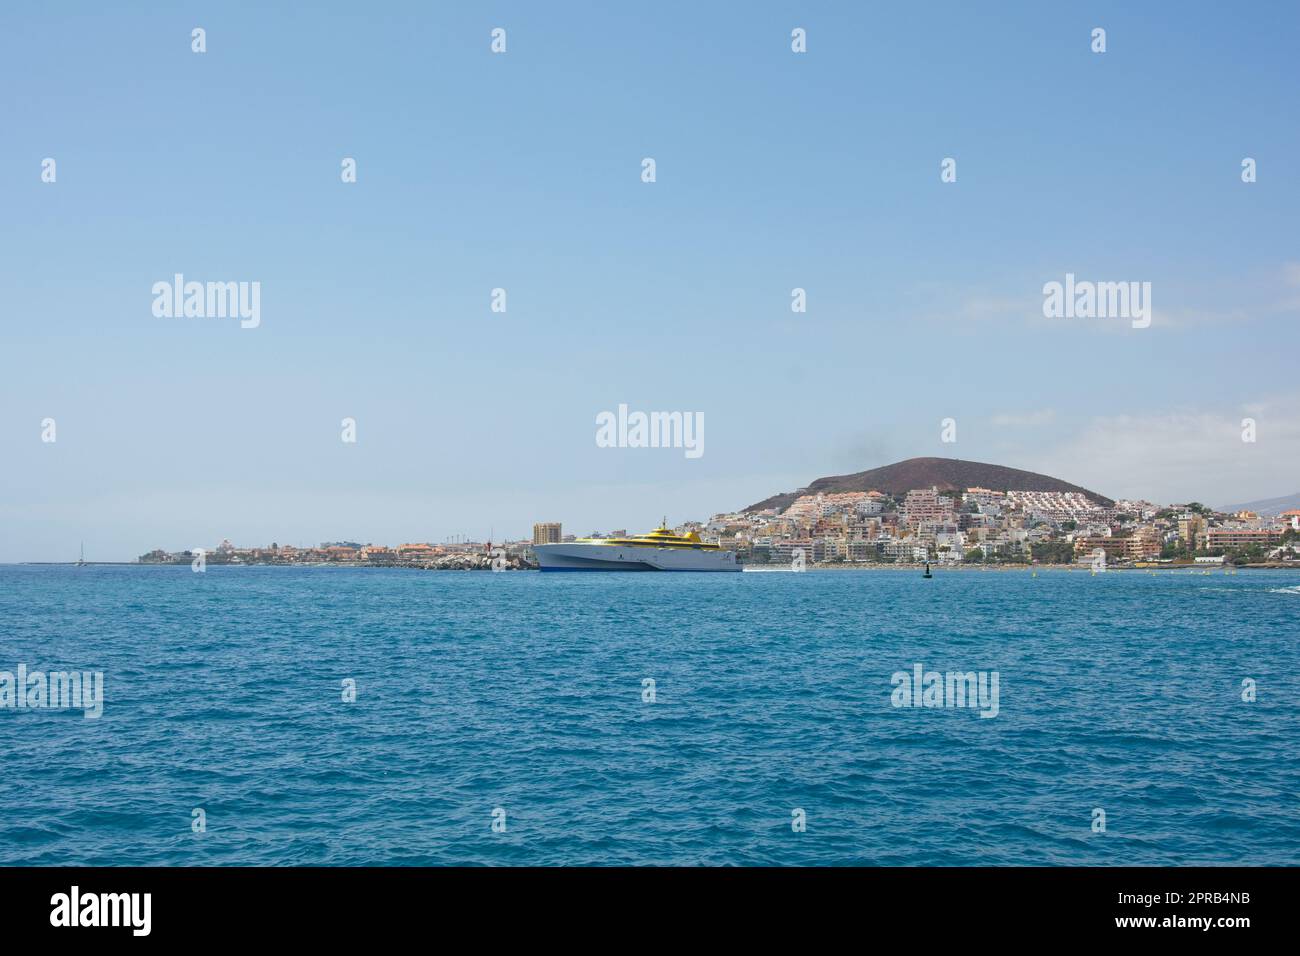 Südküste Teneriffas vom Meer aus, mit einem Schiff und blauem Himmel Stockfoto